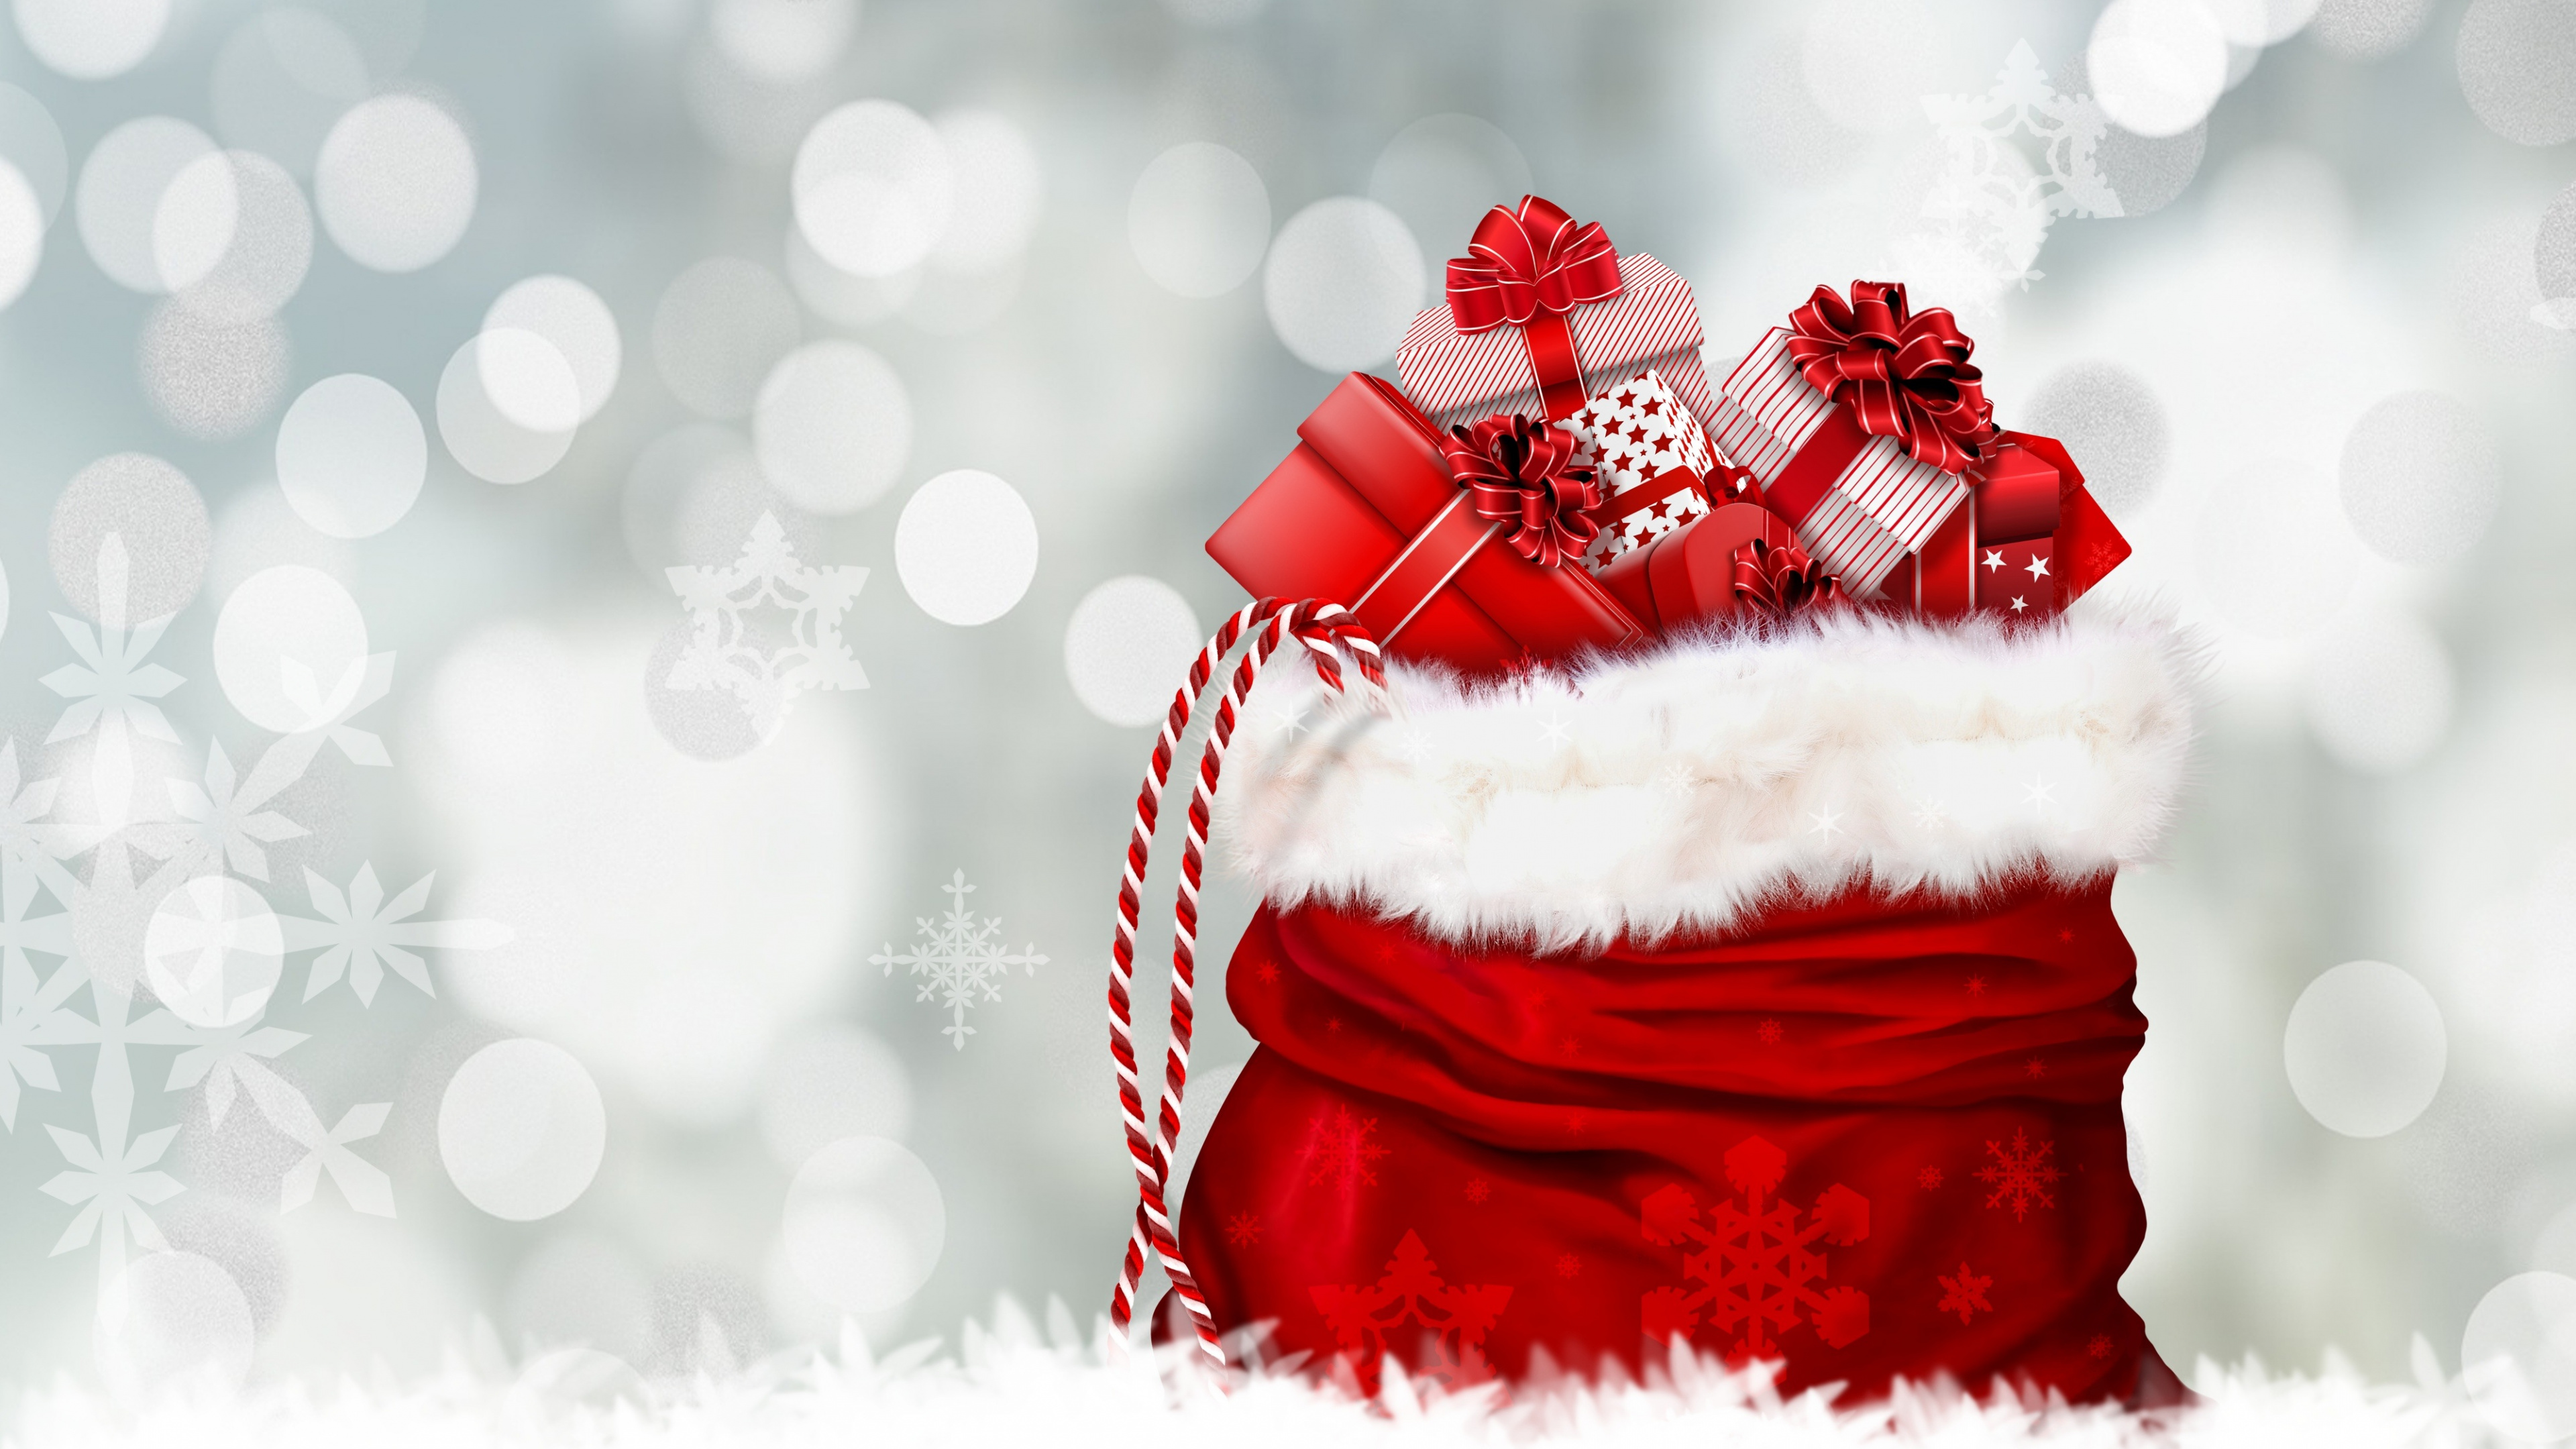 圣诞节那天, 圣诞老人, 圣诞节礼物, 红色的, 冬天 壁纸 3840x2160 允许